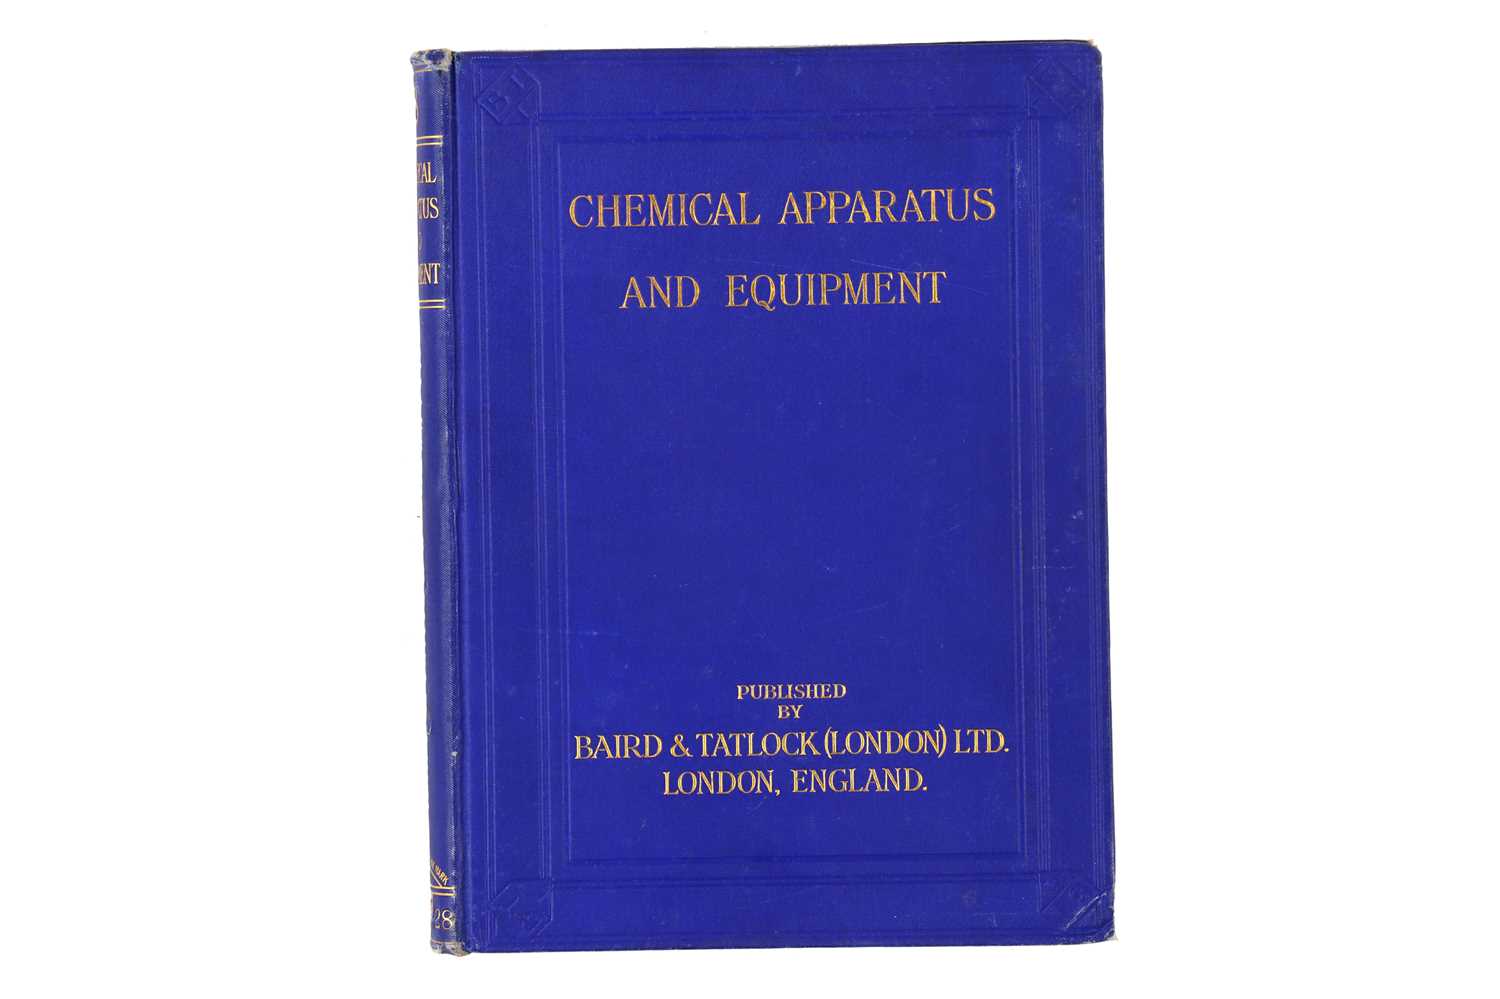 Lot 352 - Baird & Tatlock, Chemical Apparatus & Equipment Catalogue